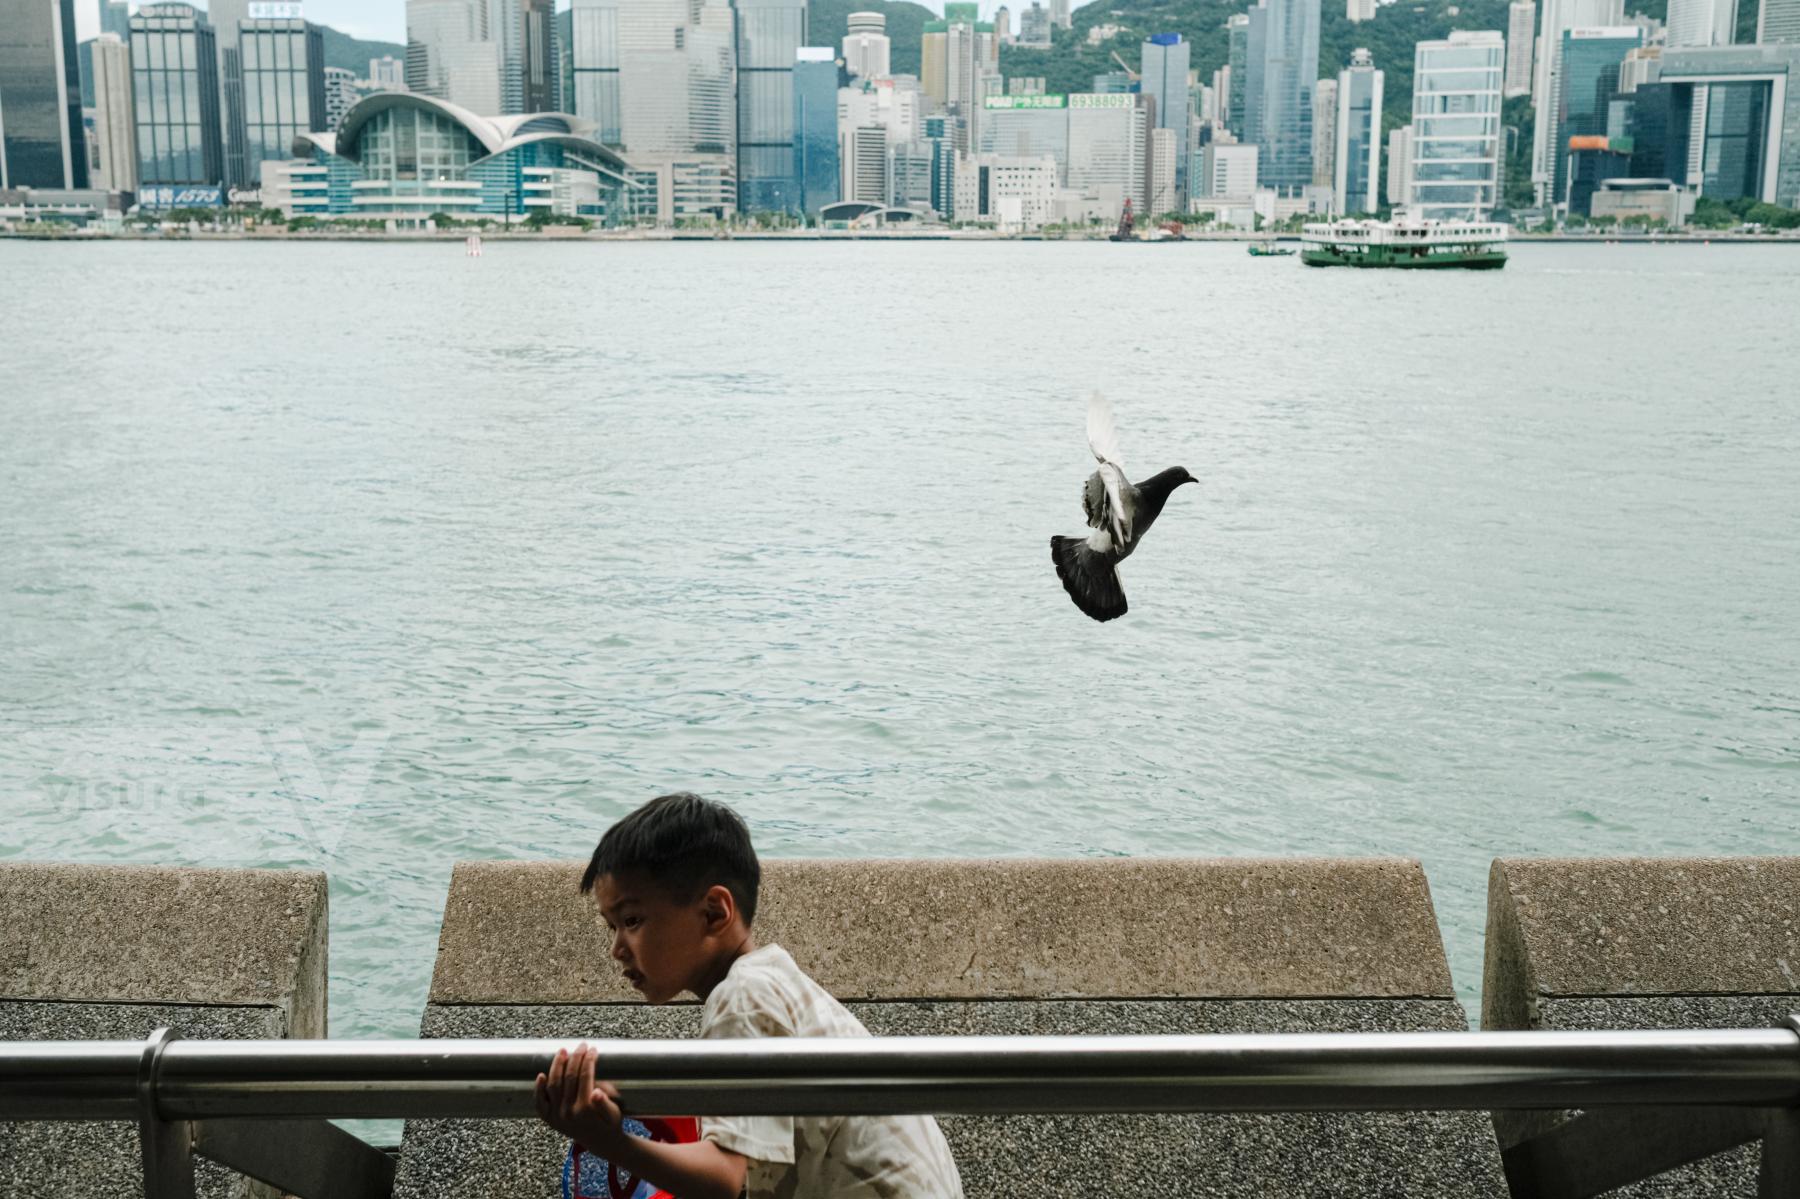 Purchase Hong Kong daily by Keith Tsuji